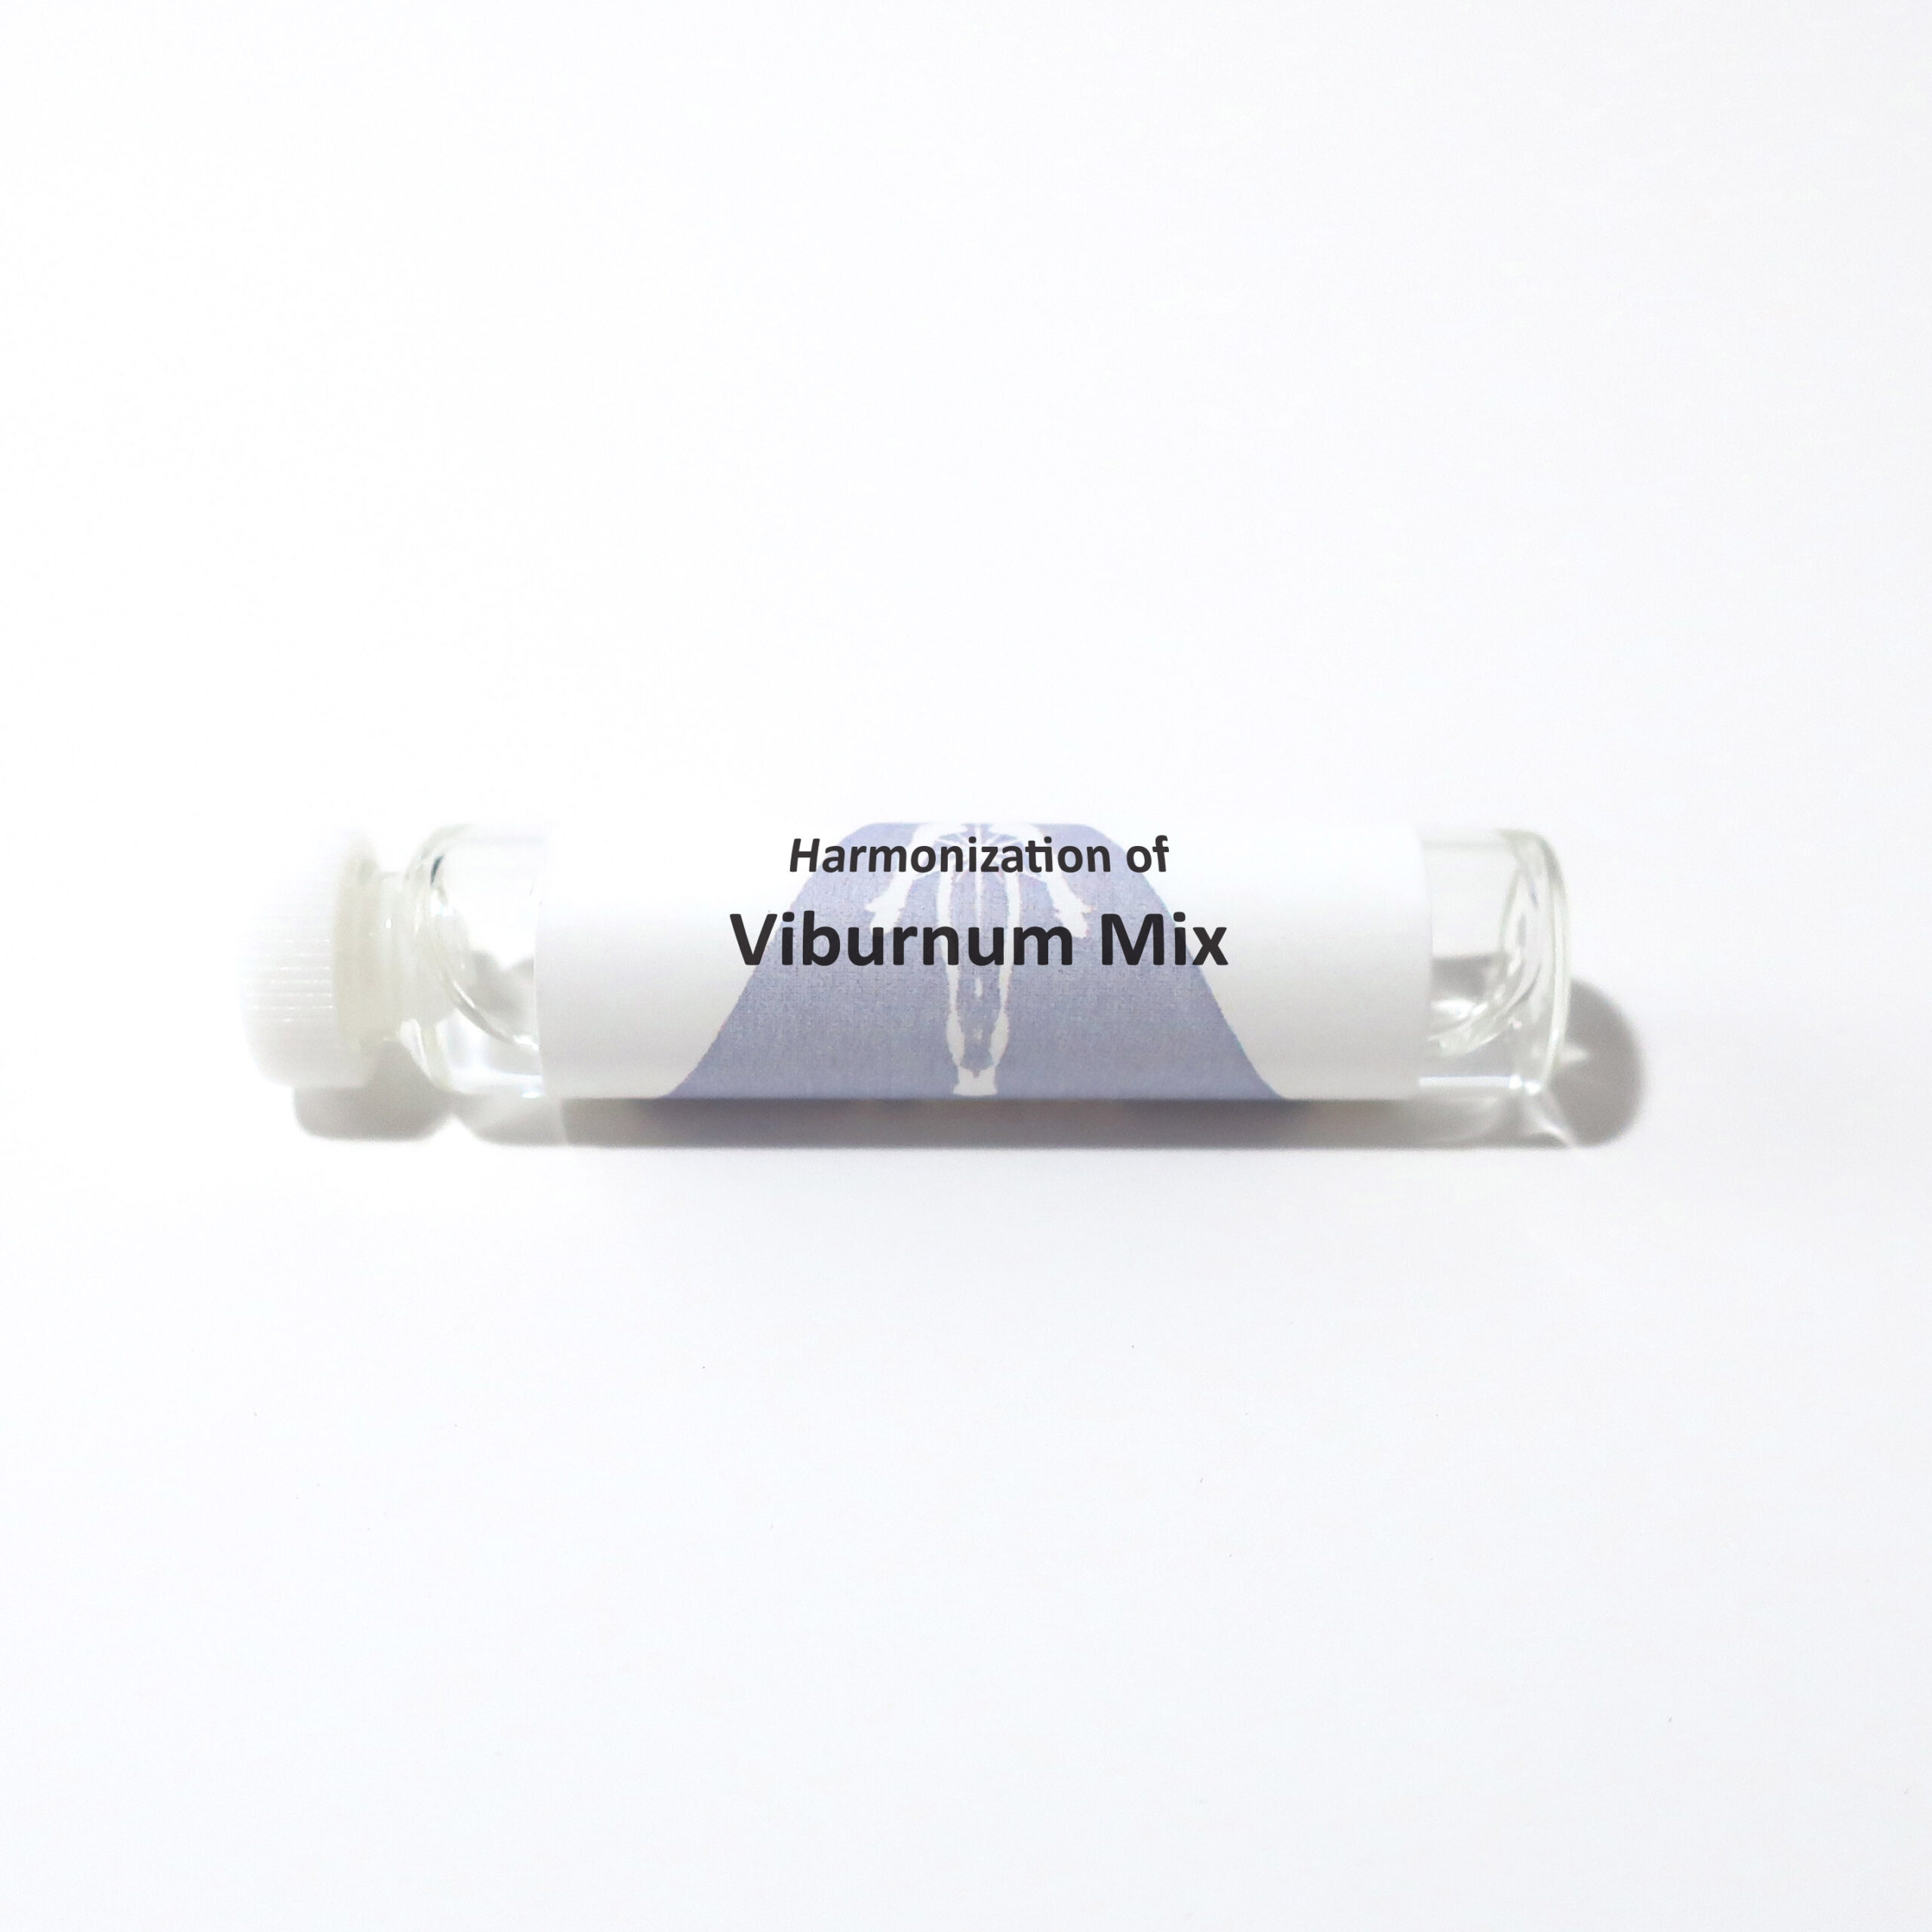 Viburnum Mix